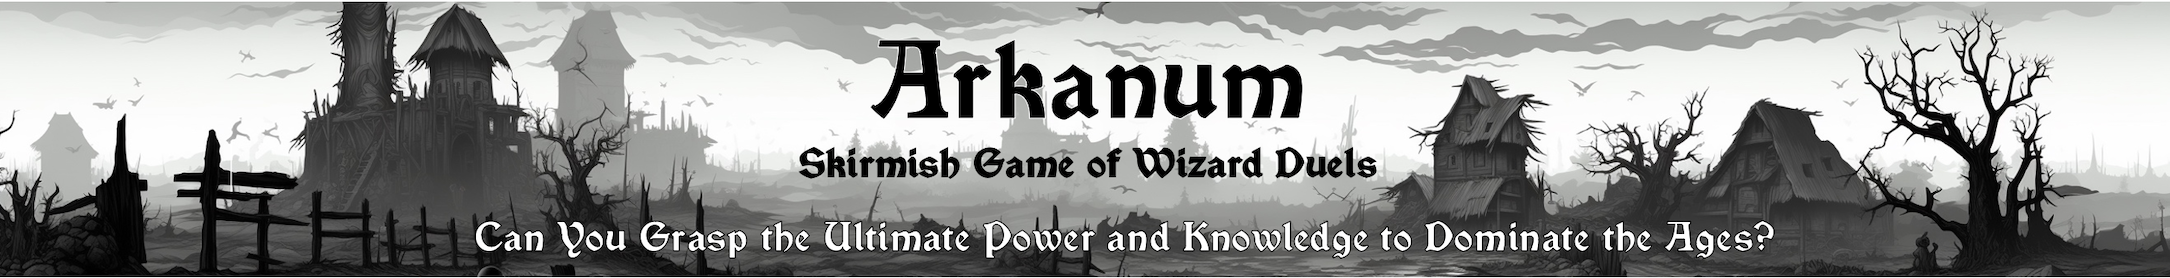 Arkanum. Skirmish Game of Wizard Duels